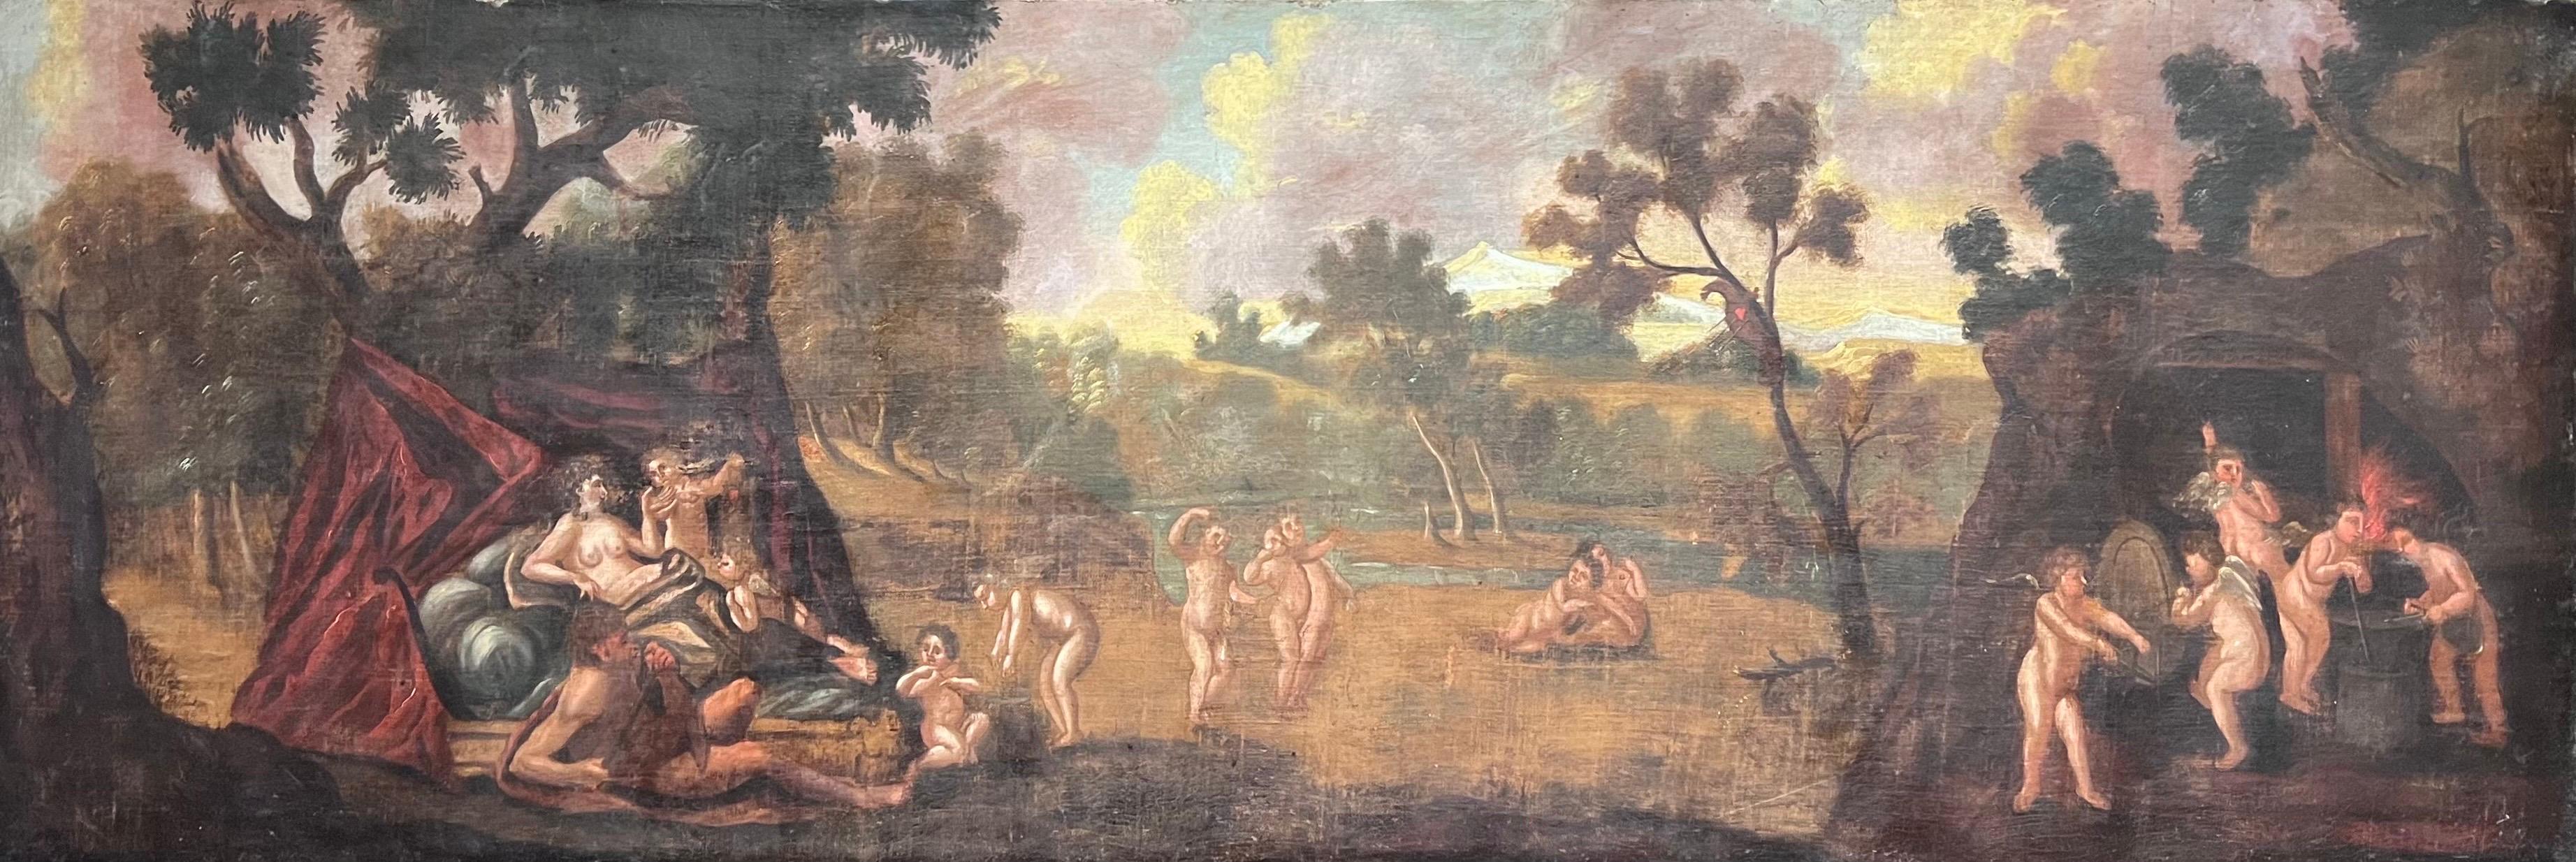 Immense peinture à l'huile de Masterly 17ème siècle Diane et Cupidons dans un paysage panoramique